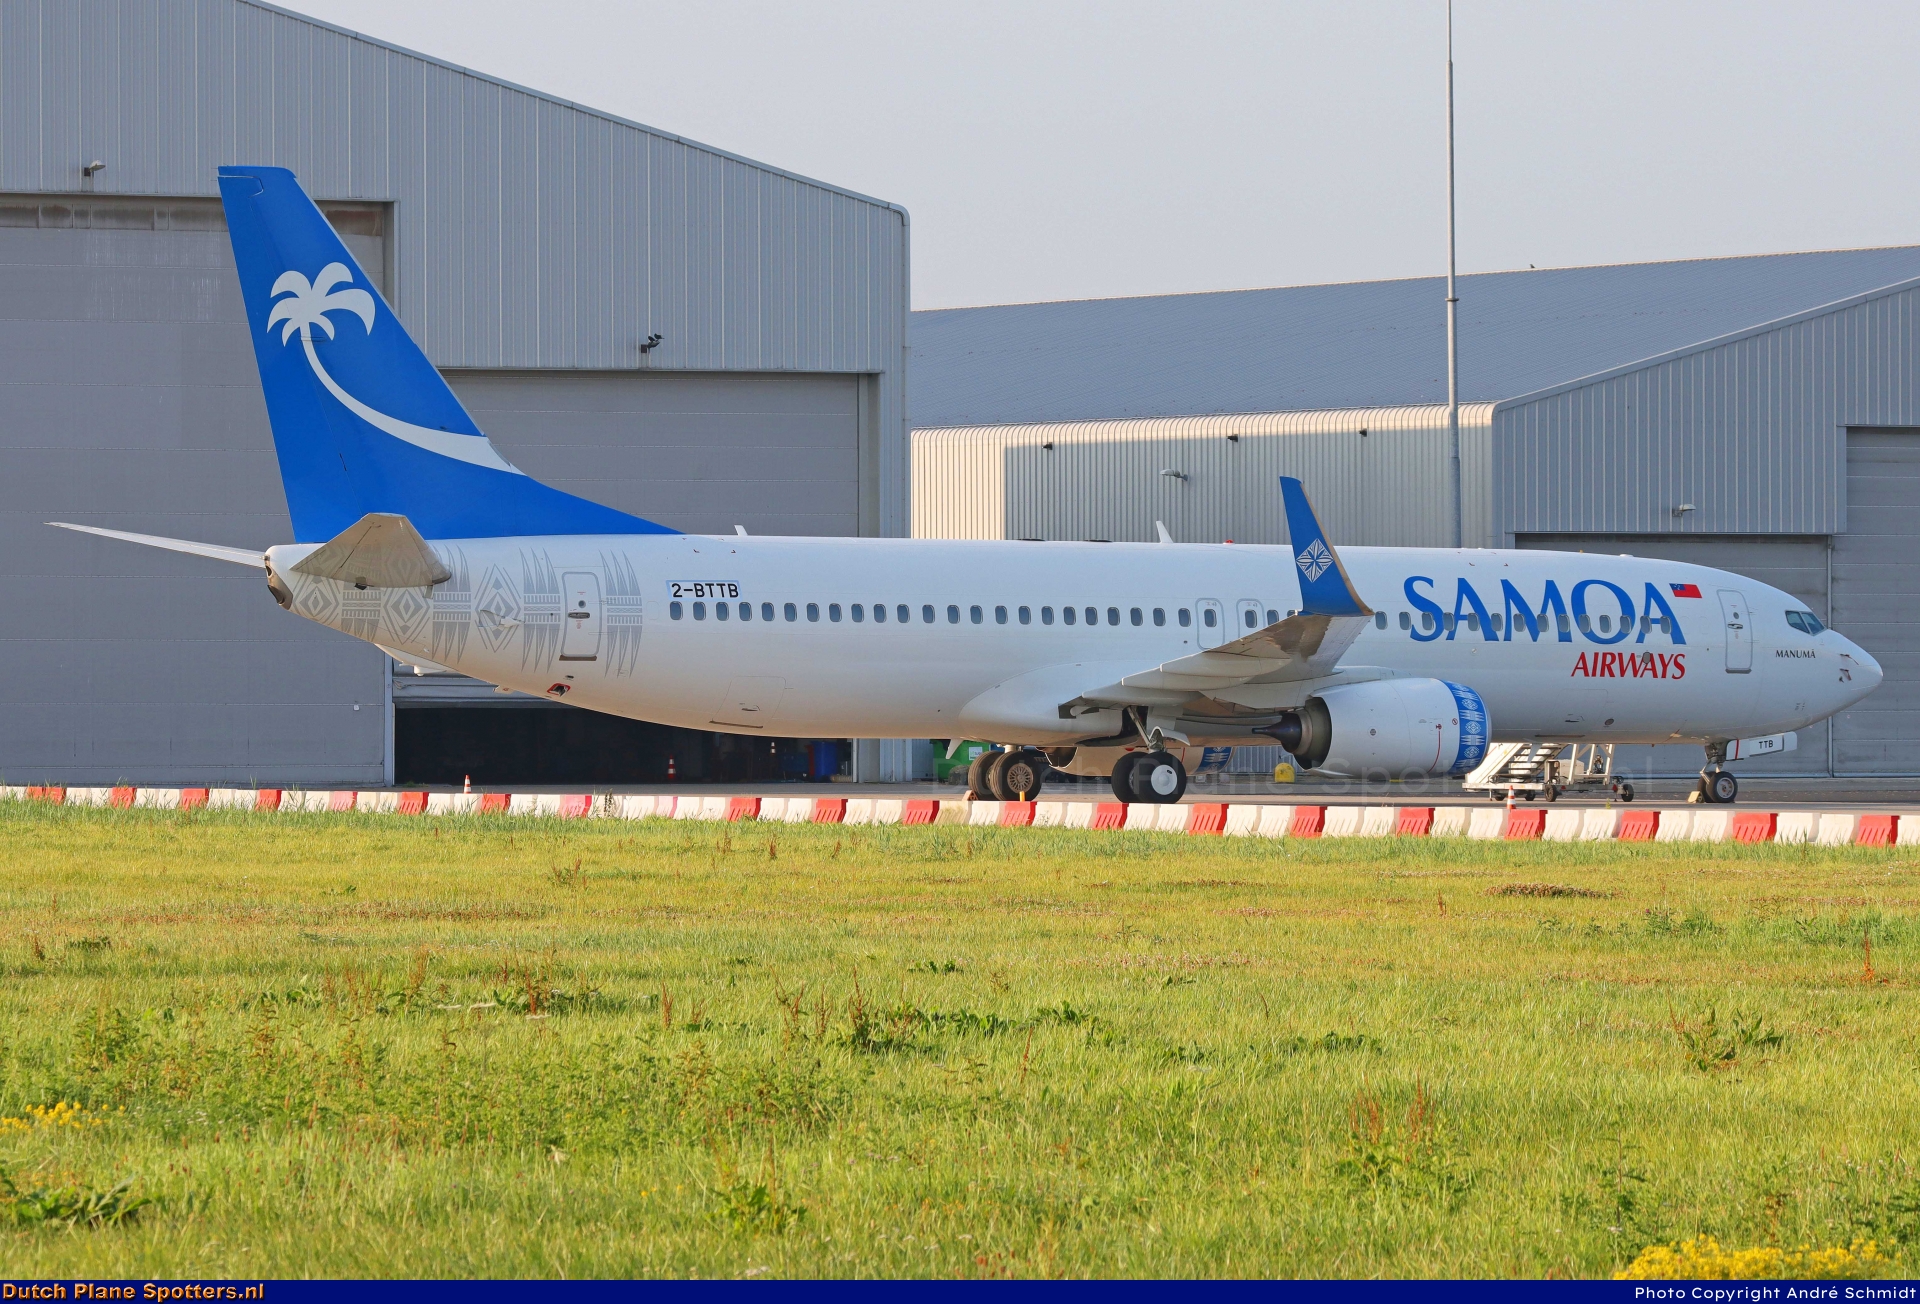 2-BTTB Boeing 737-800 Samoa Airways by André Schmidt